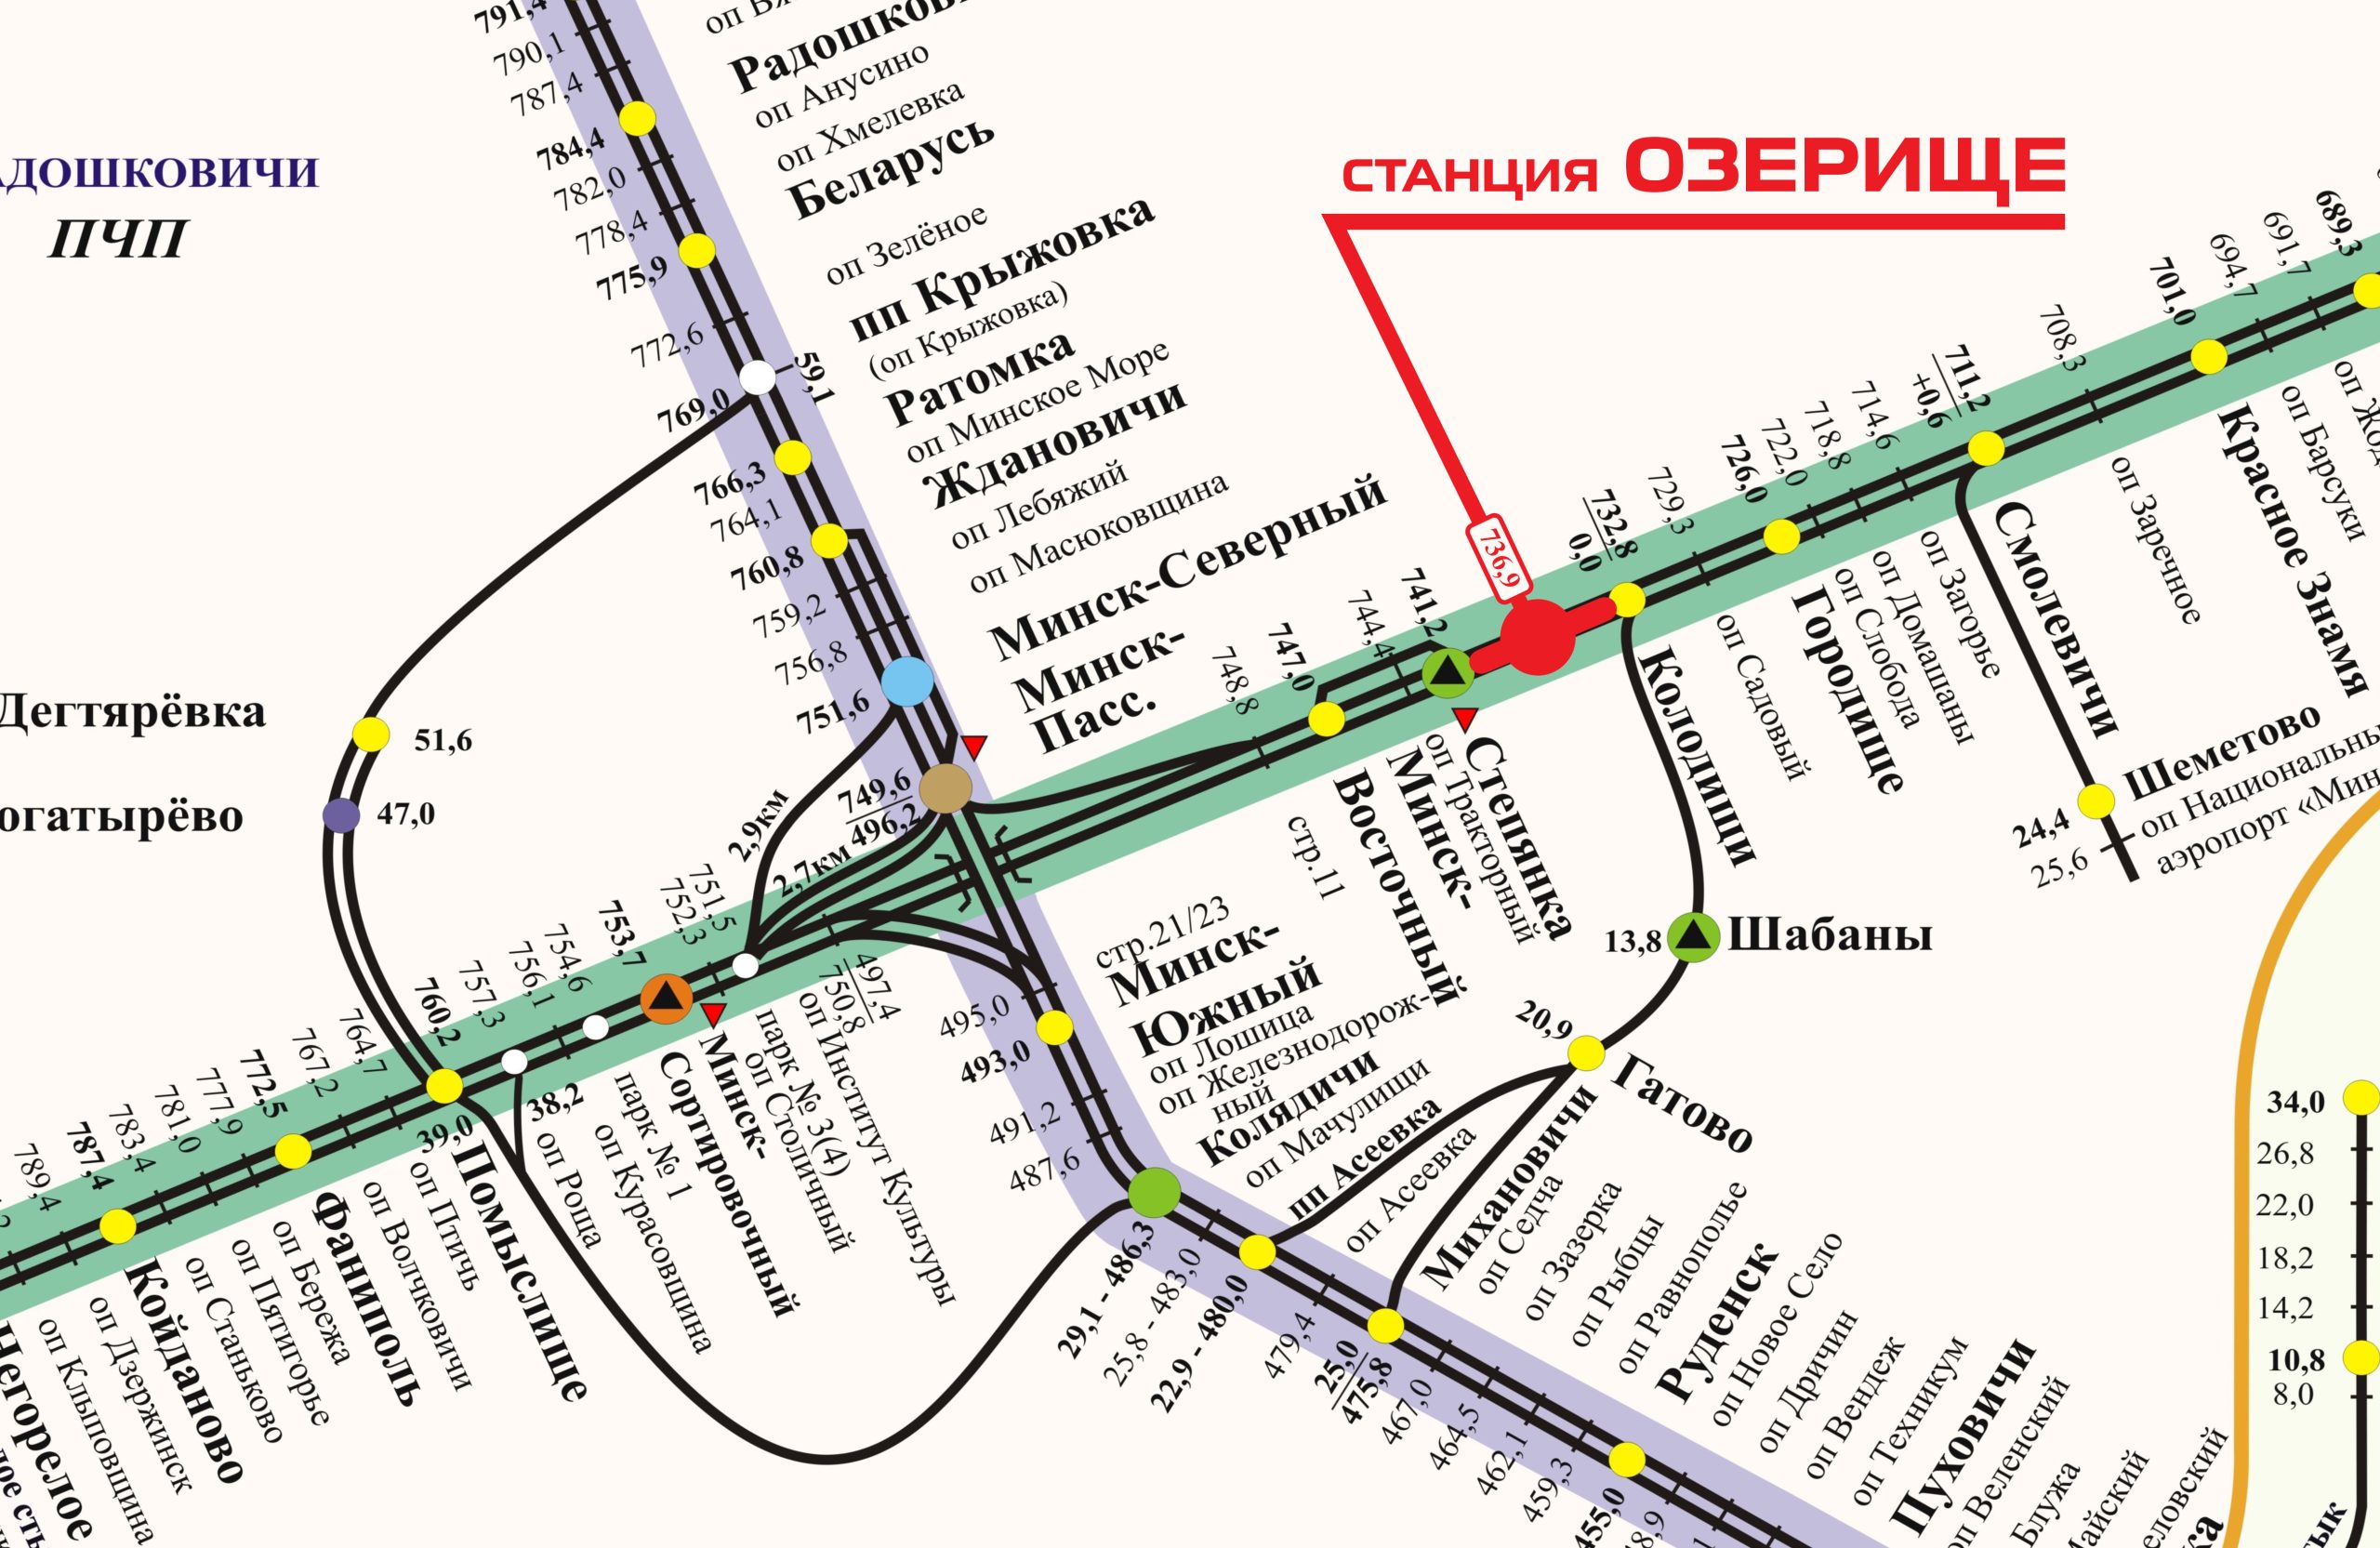 Cтанция Озерище (Минское отделение БЖД)